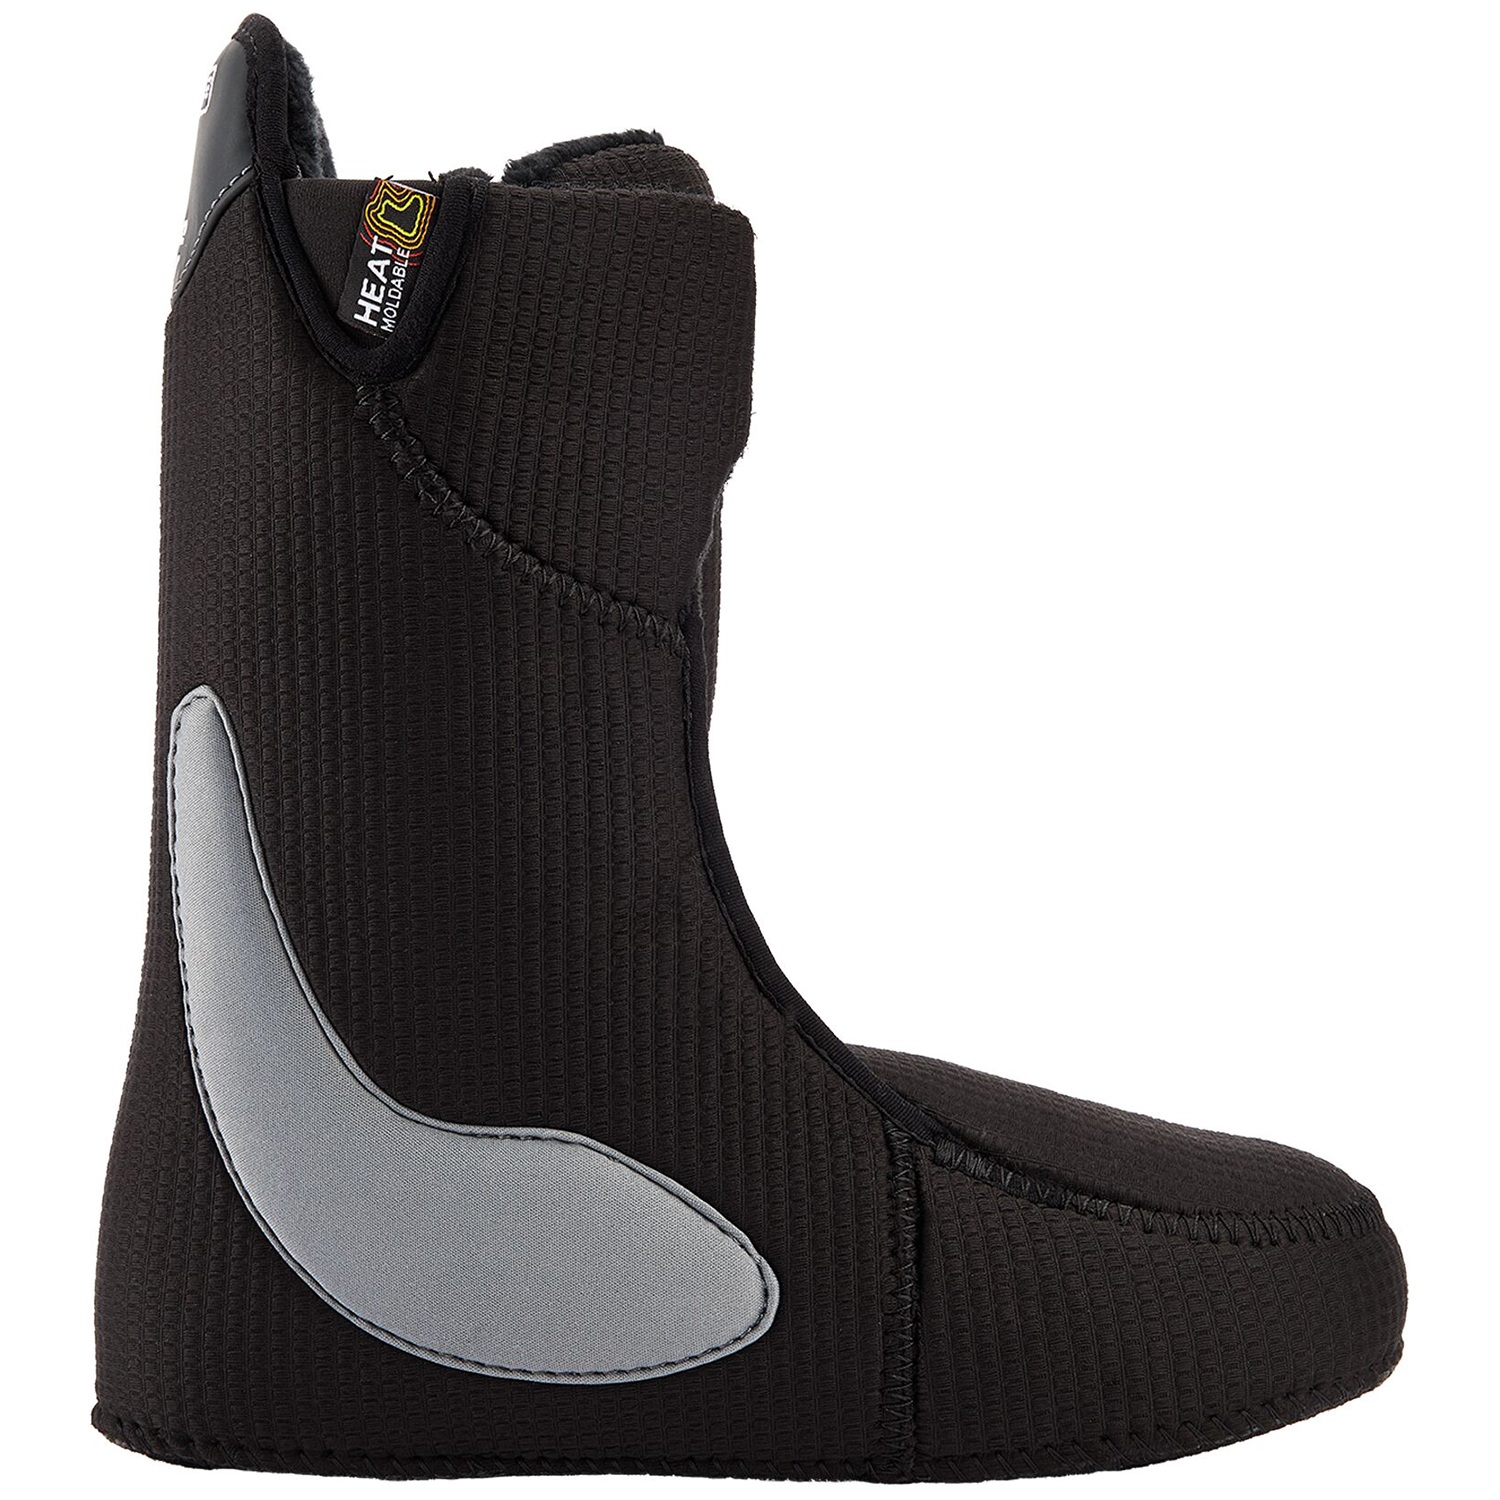 Ботинки для сноуборда Burton Limelight BOA купить в Boardshop №1